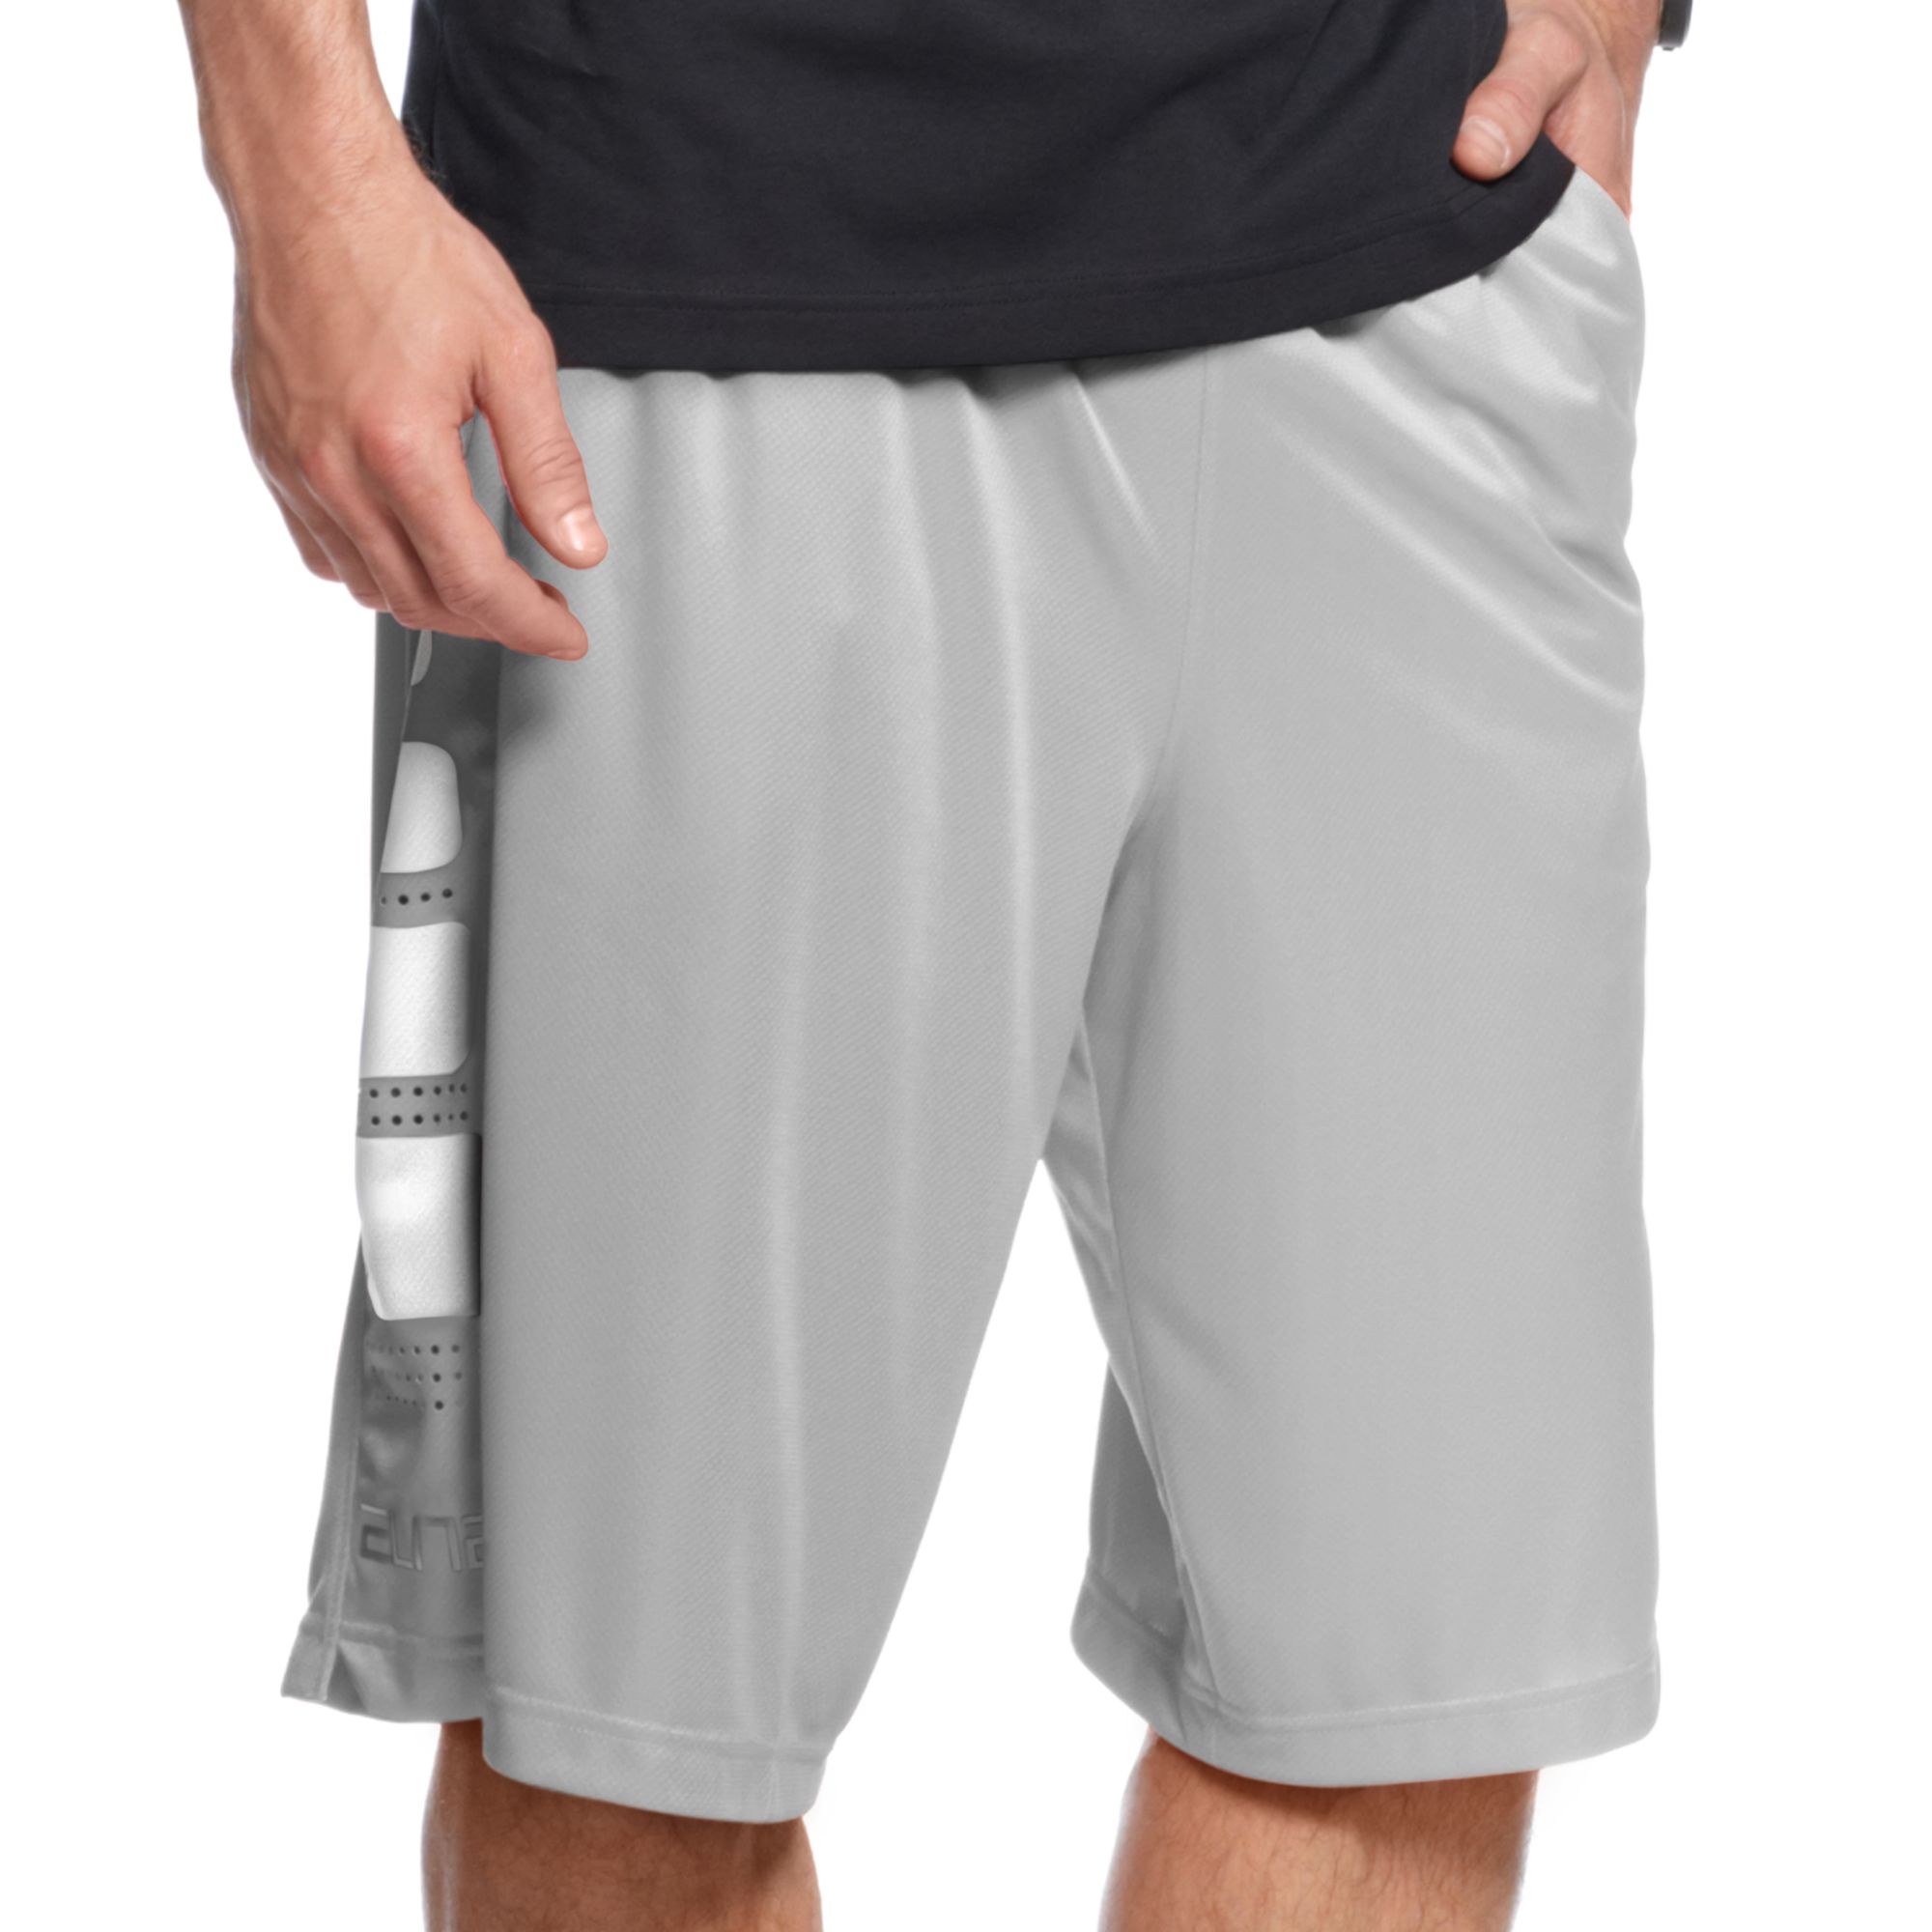 Lyst - Nike Elite Stripe Basketball Shorts in Gray for Men